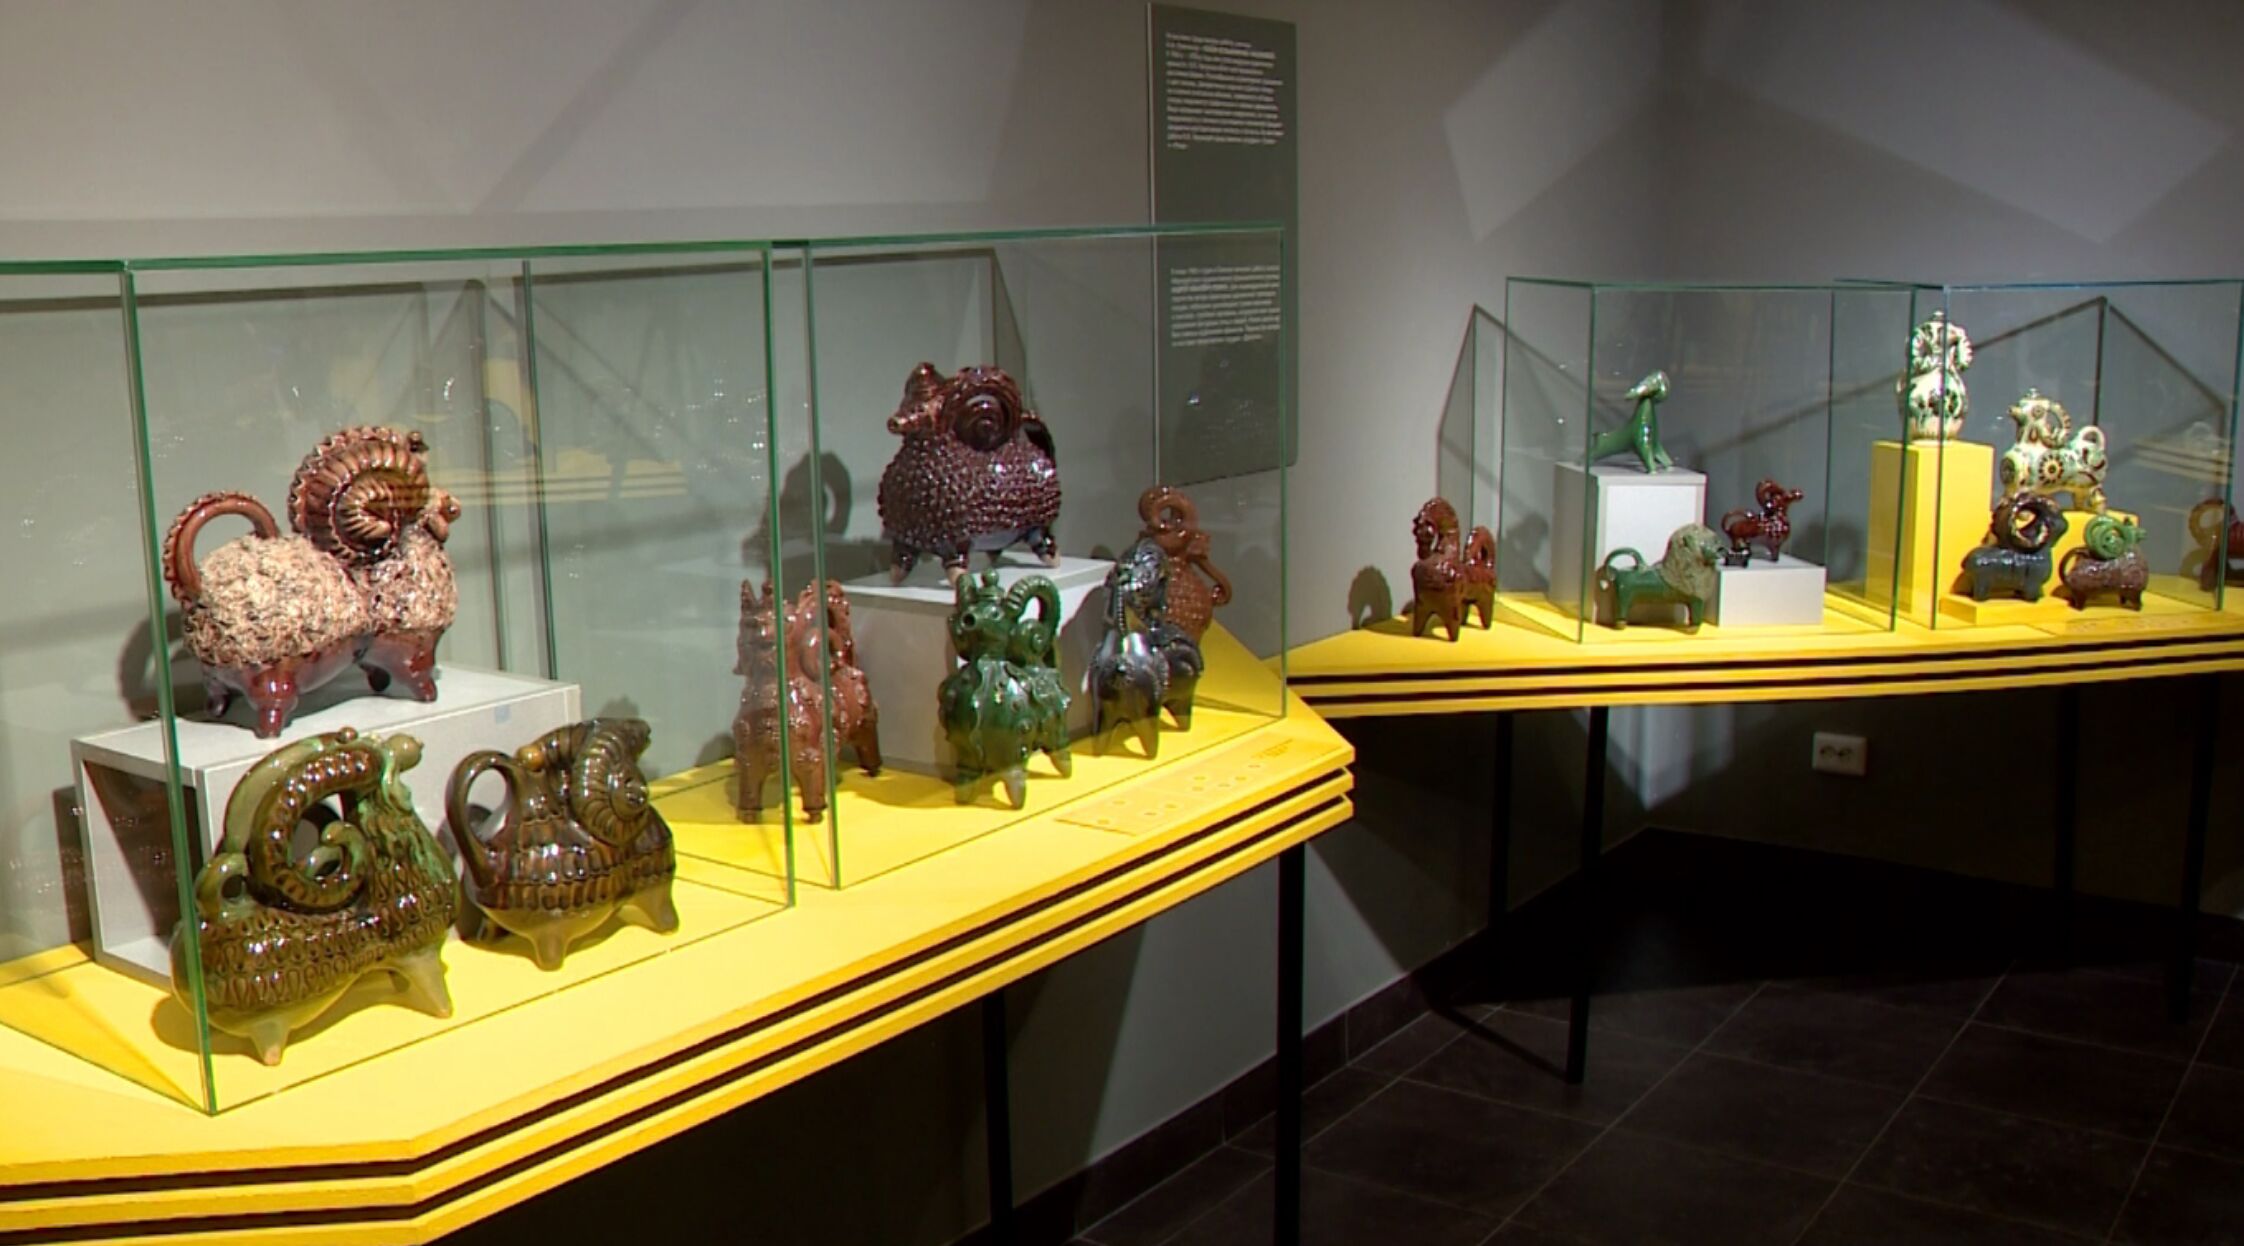 Львы, бараны и медведь с гармонью: в музее зарубежного искусства открылась новая выставка